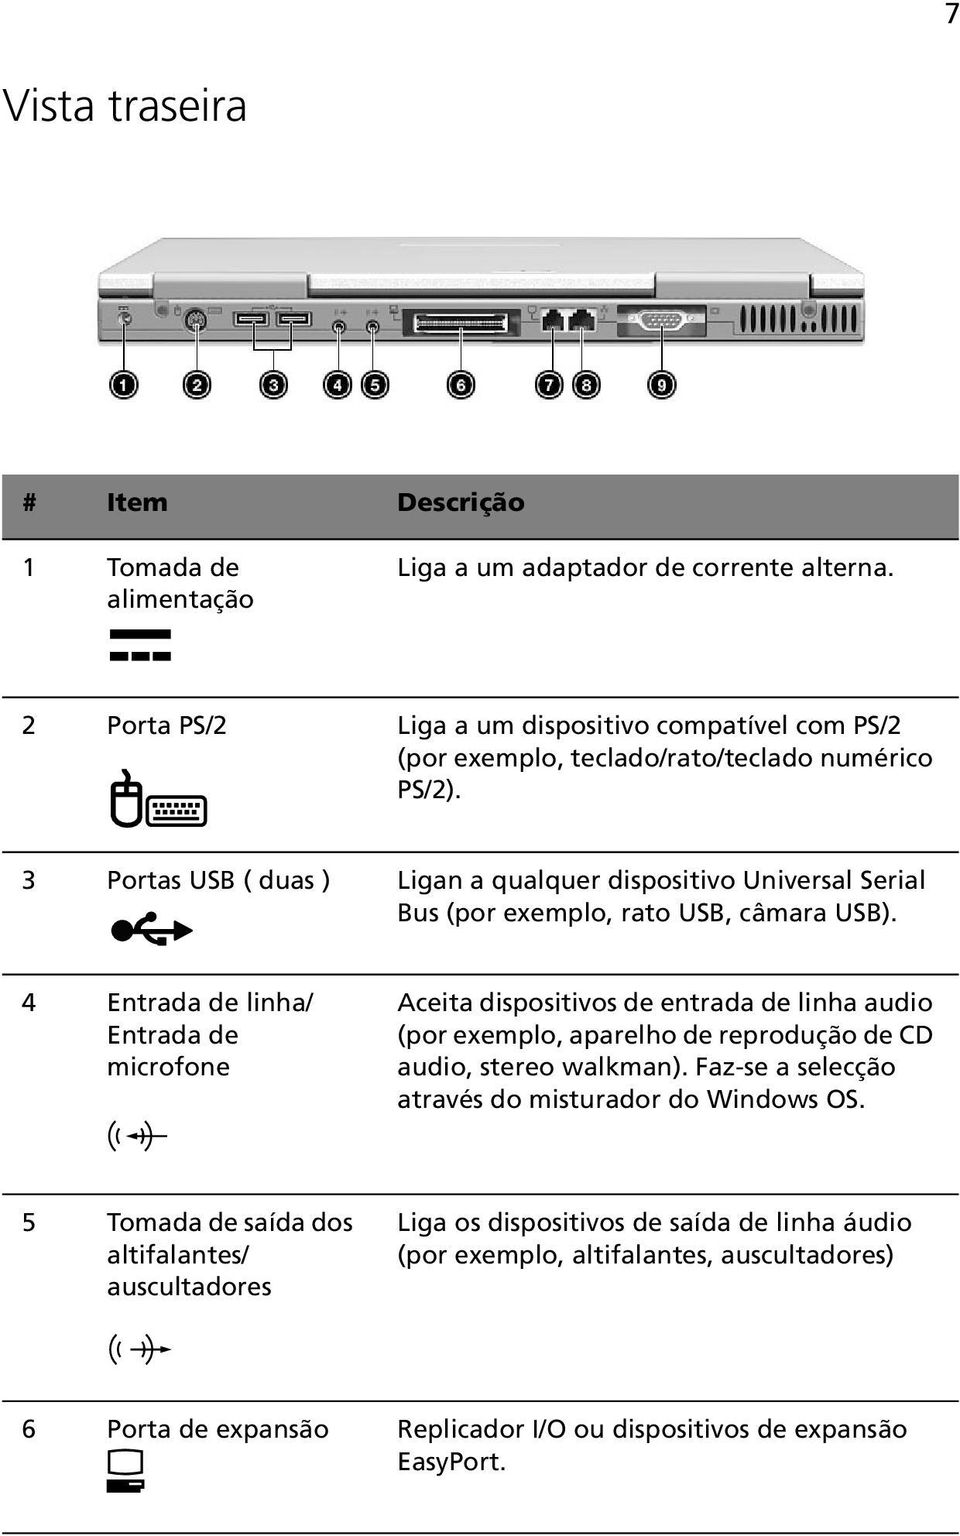 3 Portas USB ( duas ) Ligan a qualquer dispositivo Universal Serial Bus (por exemplo, rato USB, câmara USB).